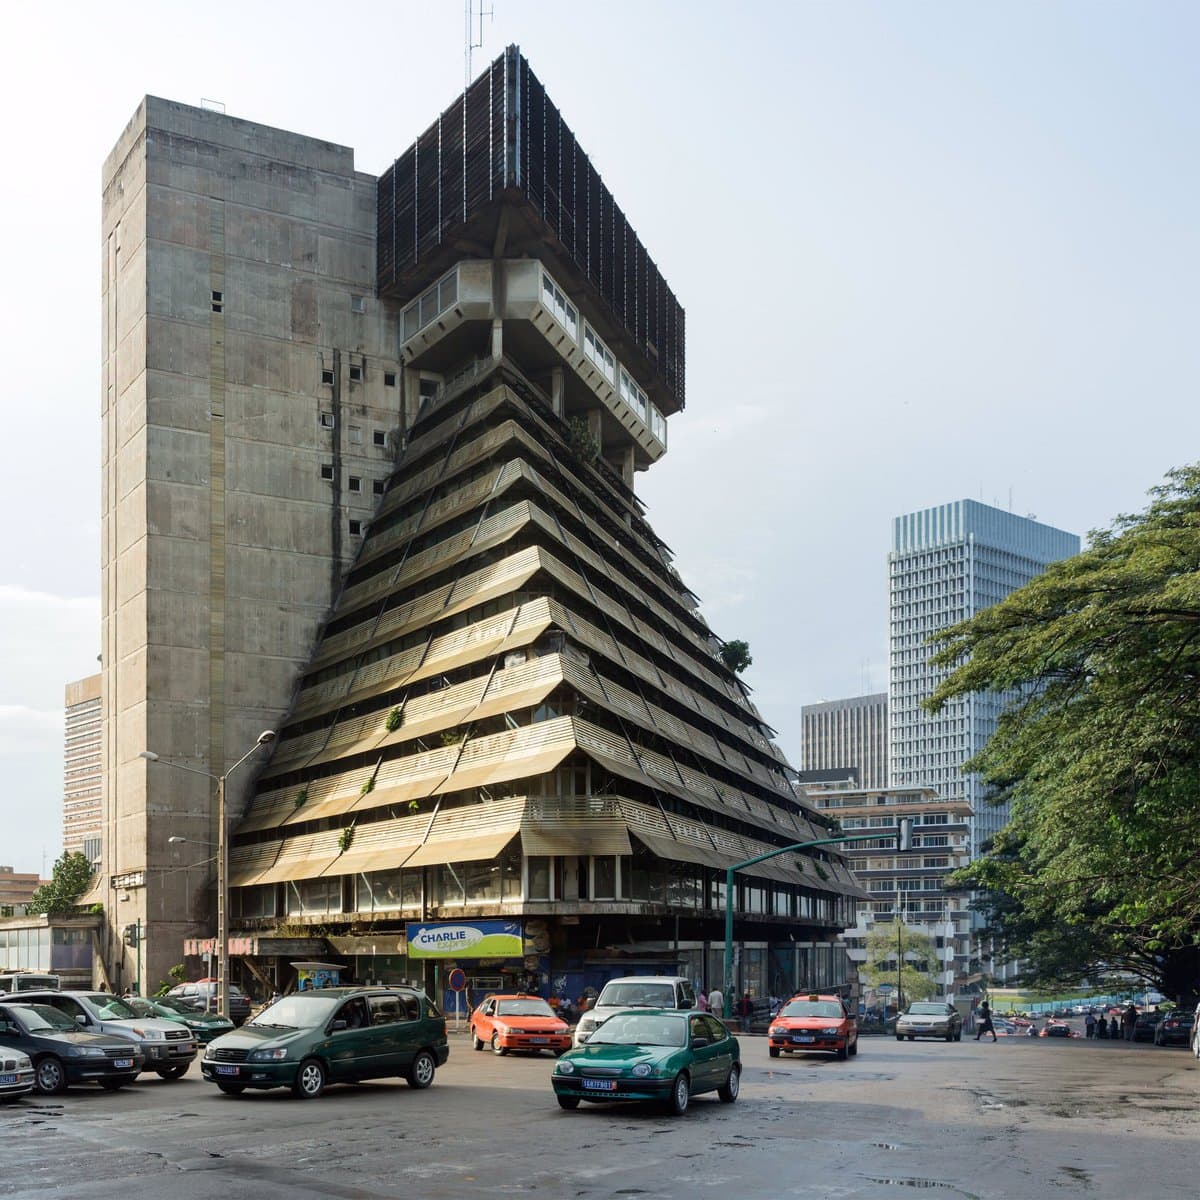 Уникальная африканская архитектура